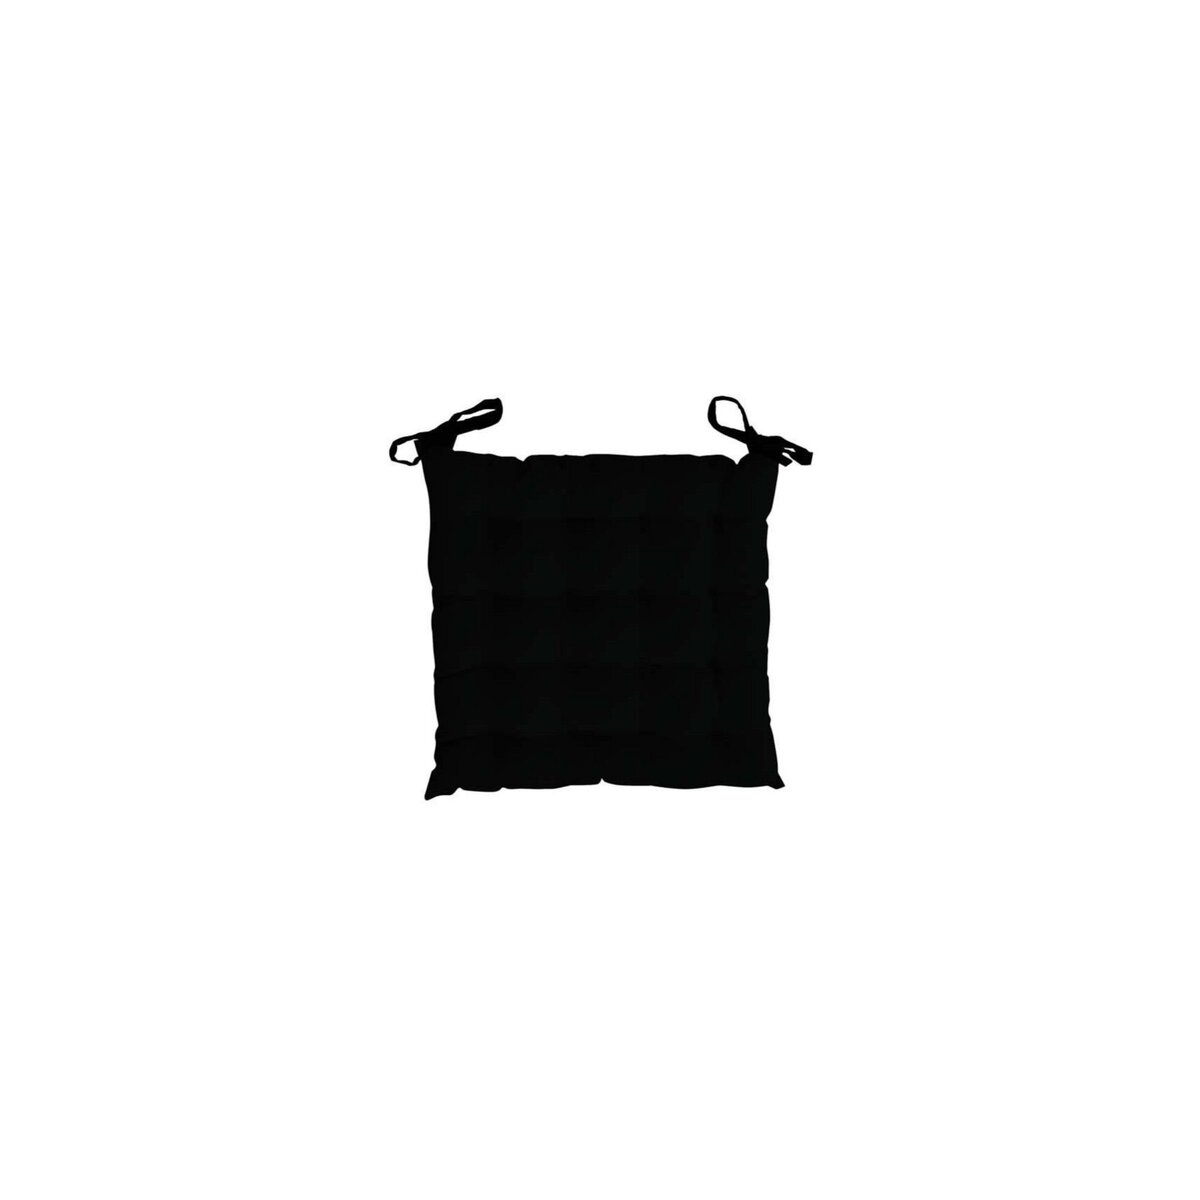 Soleil d'ocre Dessus de chaise capitonné en coton 40x40x5 cm PANAMA noir, par Soleil d'Ocre